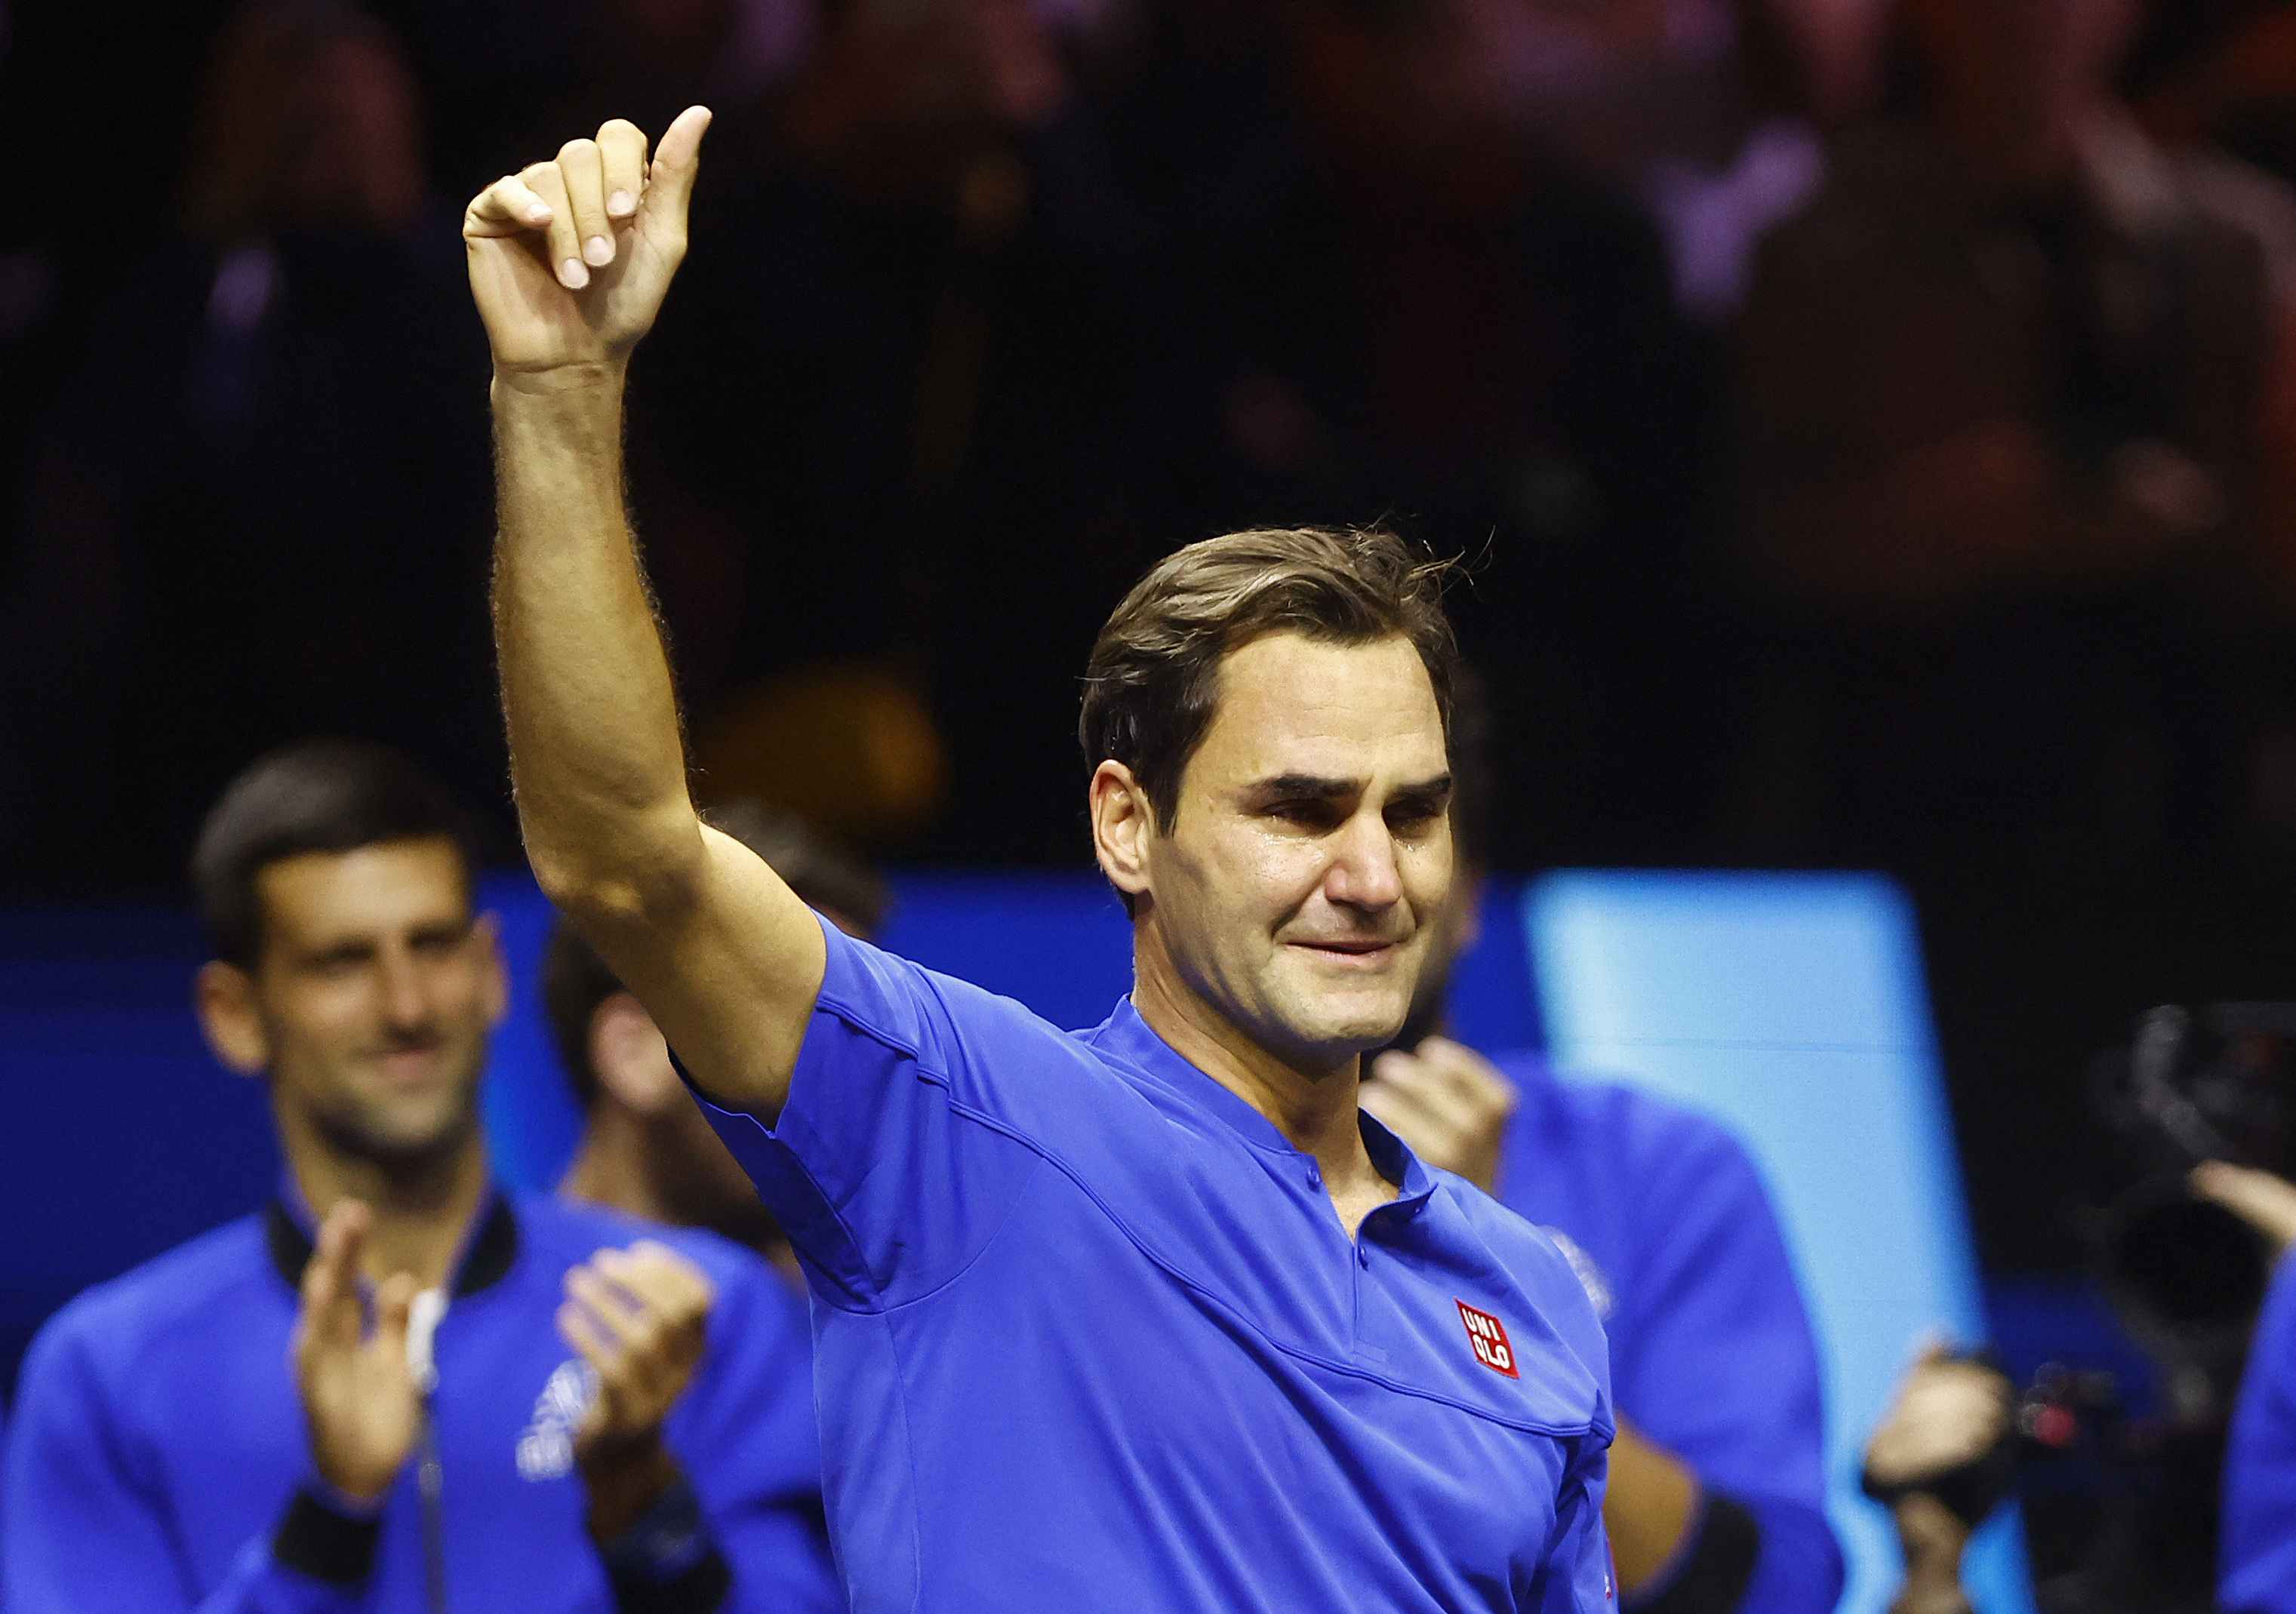 Roger Federer no pudo evitar emocionarse al término de su último partido (Foto: Reuters)